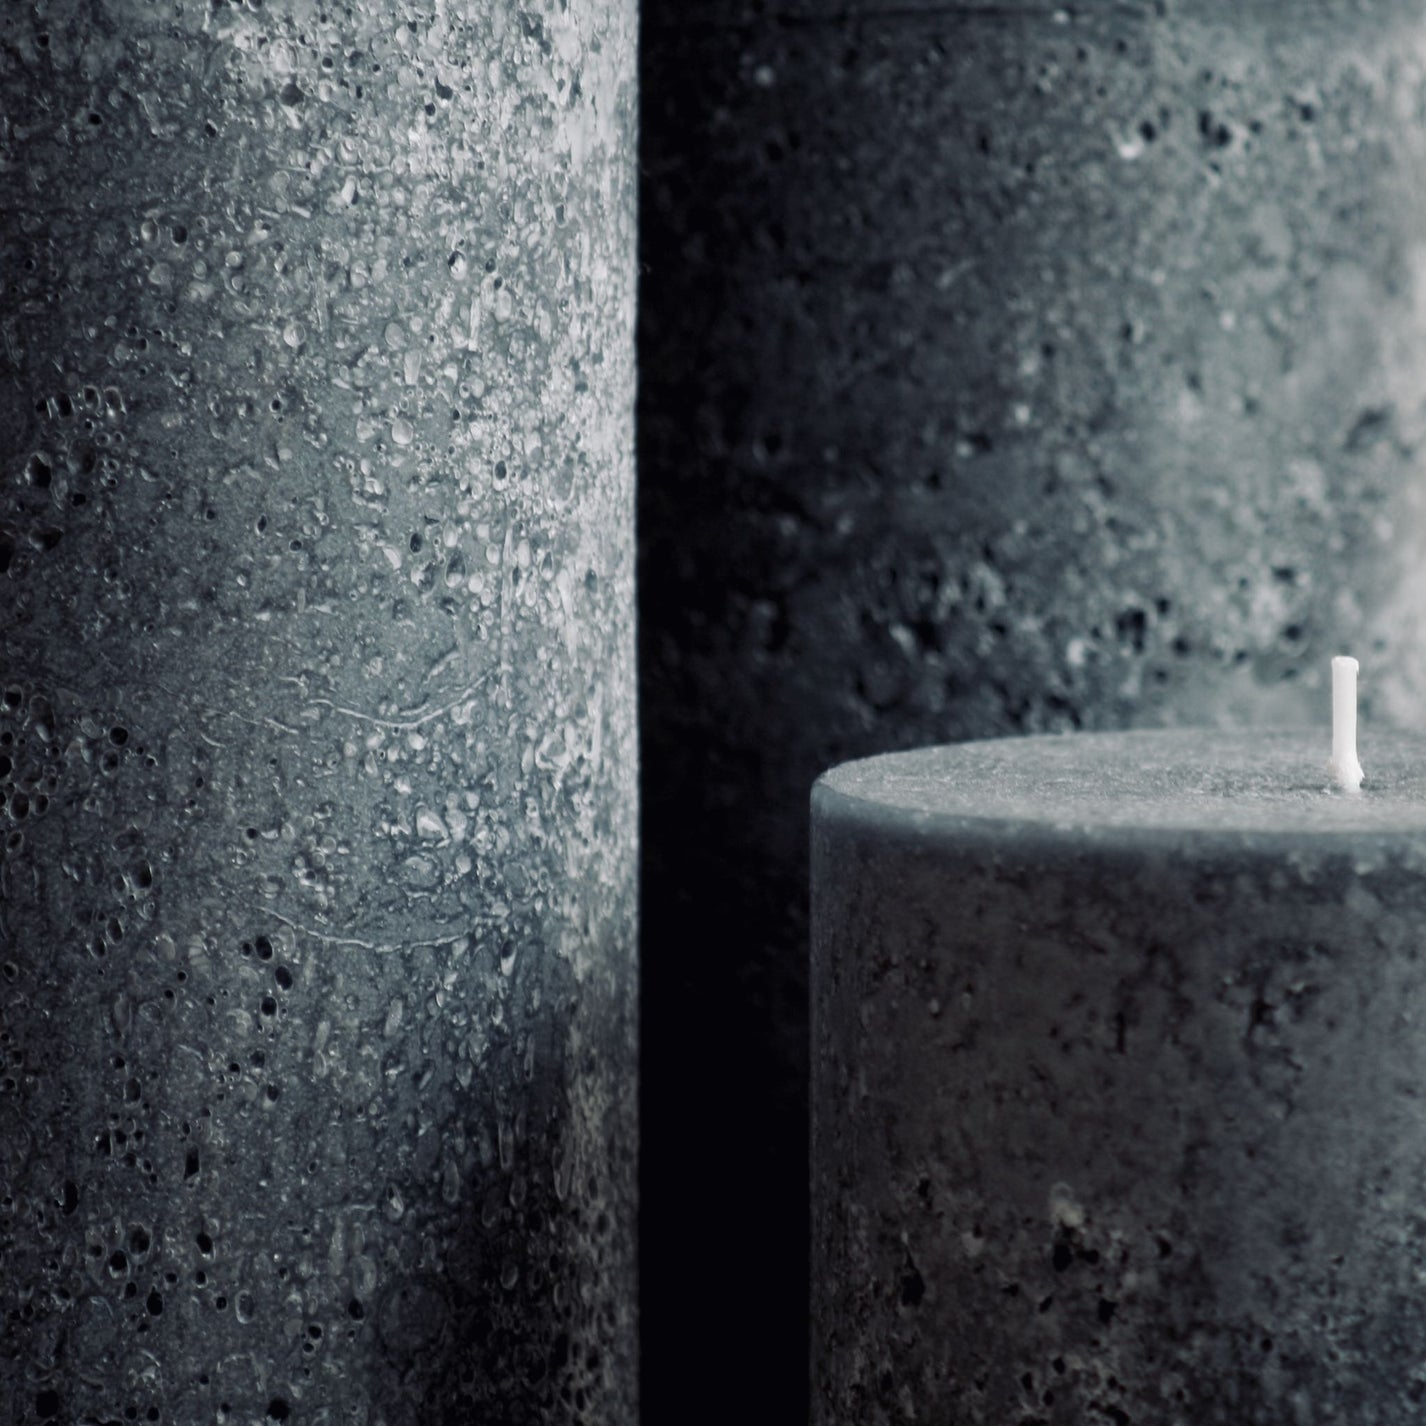 Textured Pillar Candle - Black